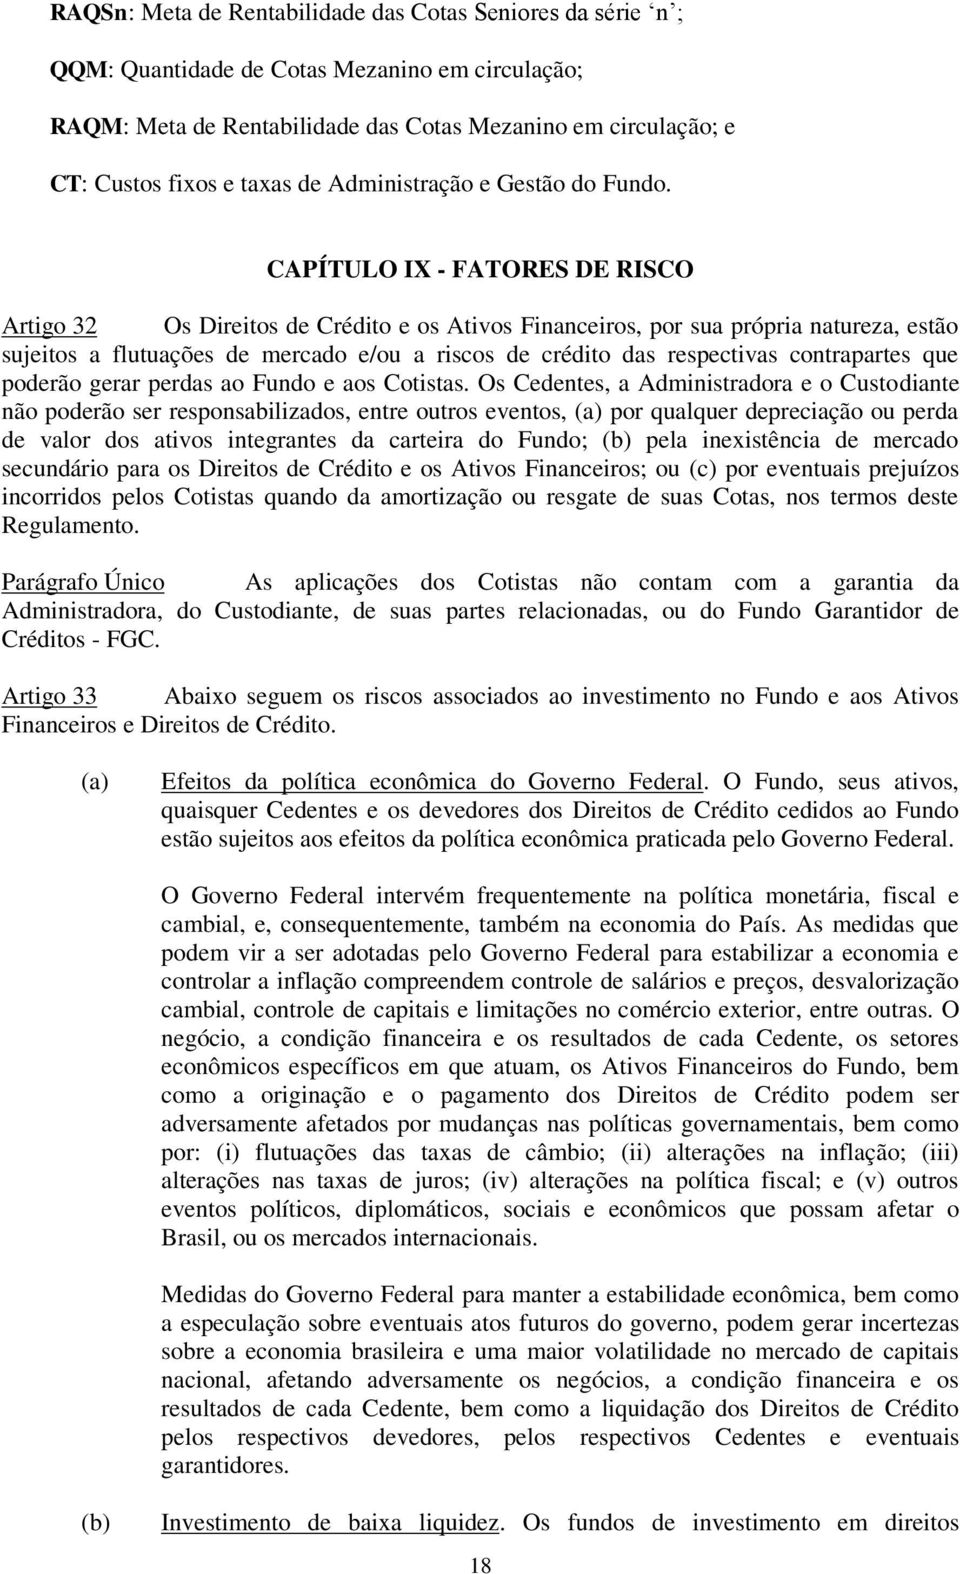 CAPÍTULO IX - FATORES DE RISCO Artigo 32 Os Direitos de Crédito e os Ativos Financeiros, por sua própria natureza, estão sujeitos a flutuações de mercado e/ou a riscos de crédito das respectivas